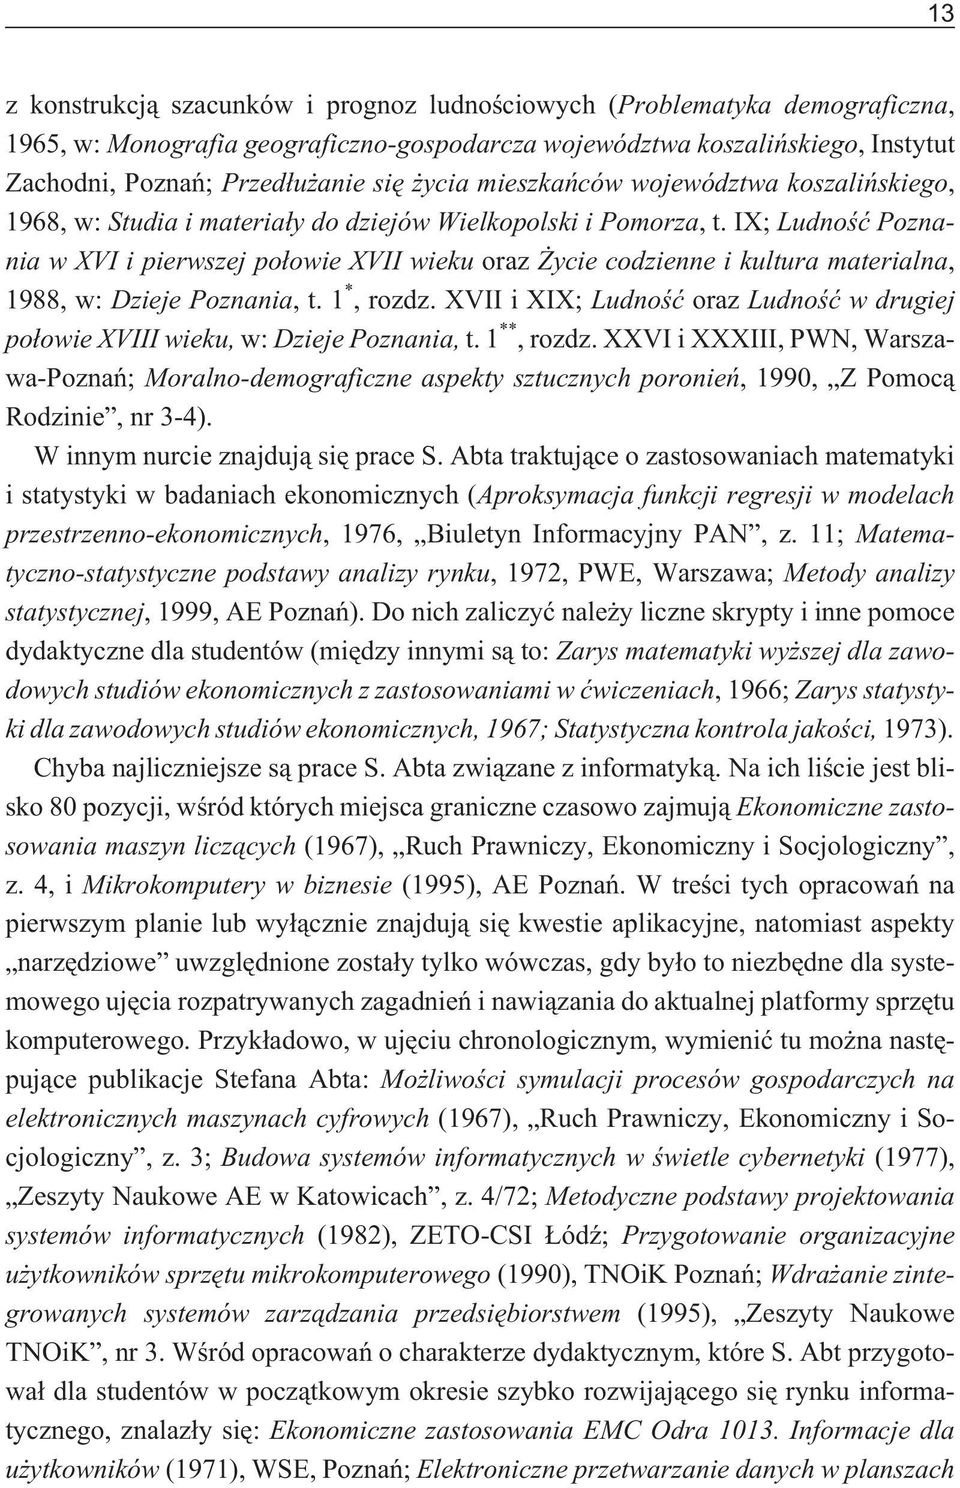 IX;Ludnoœæ Poznania w XVI i pierwszej po³owie XVII wieku oraz ycie codzienne i kultura materialna, 1988, w: Dzieje Poznania, t.1 *, rozdz.